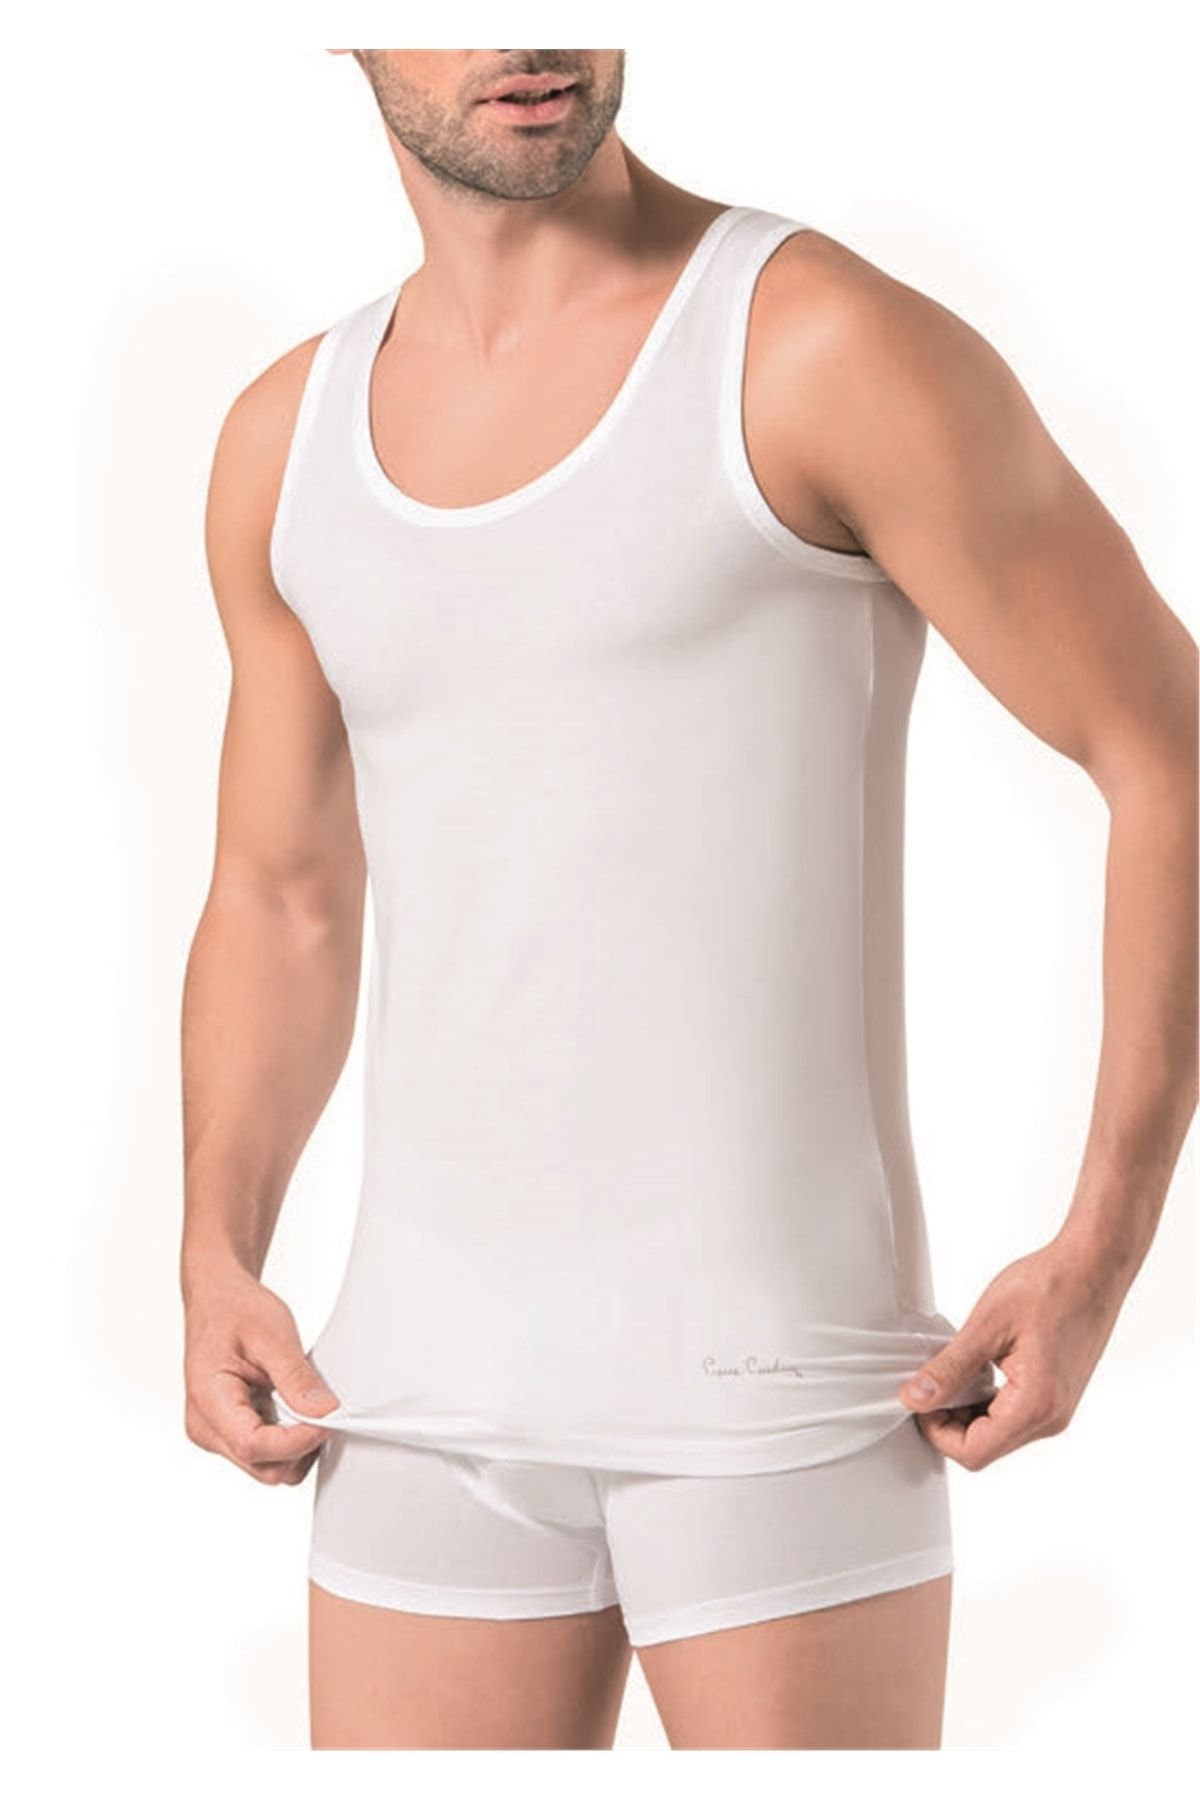 Pierre Cardin 300 Erkek Likralı Modal Atlet-beyaz